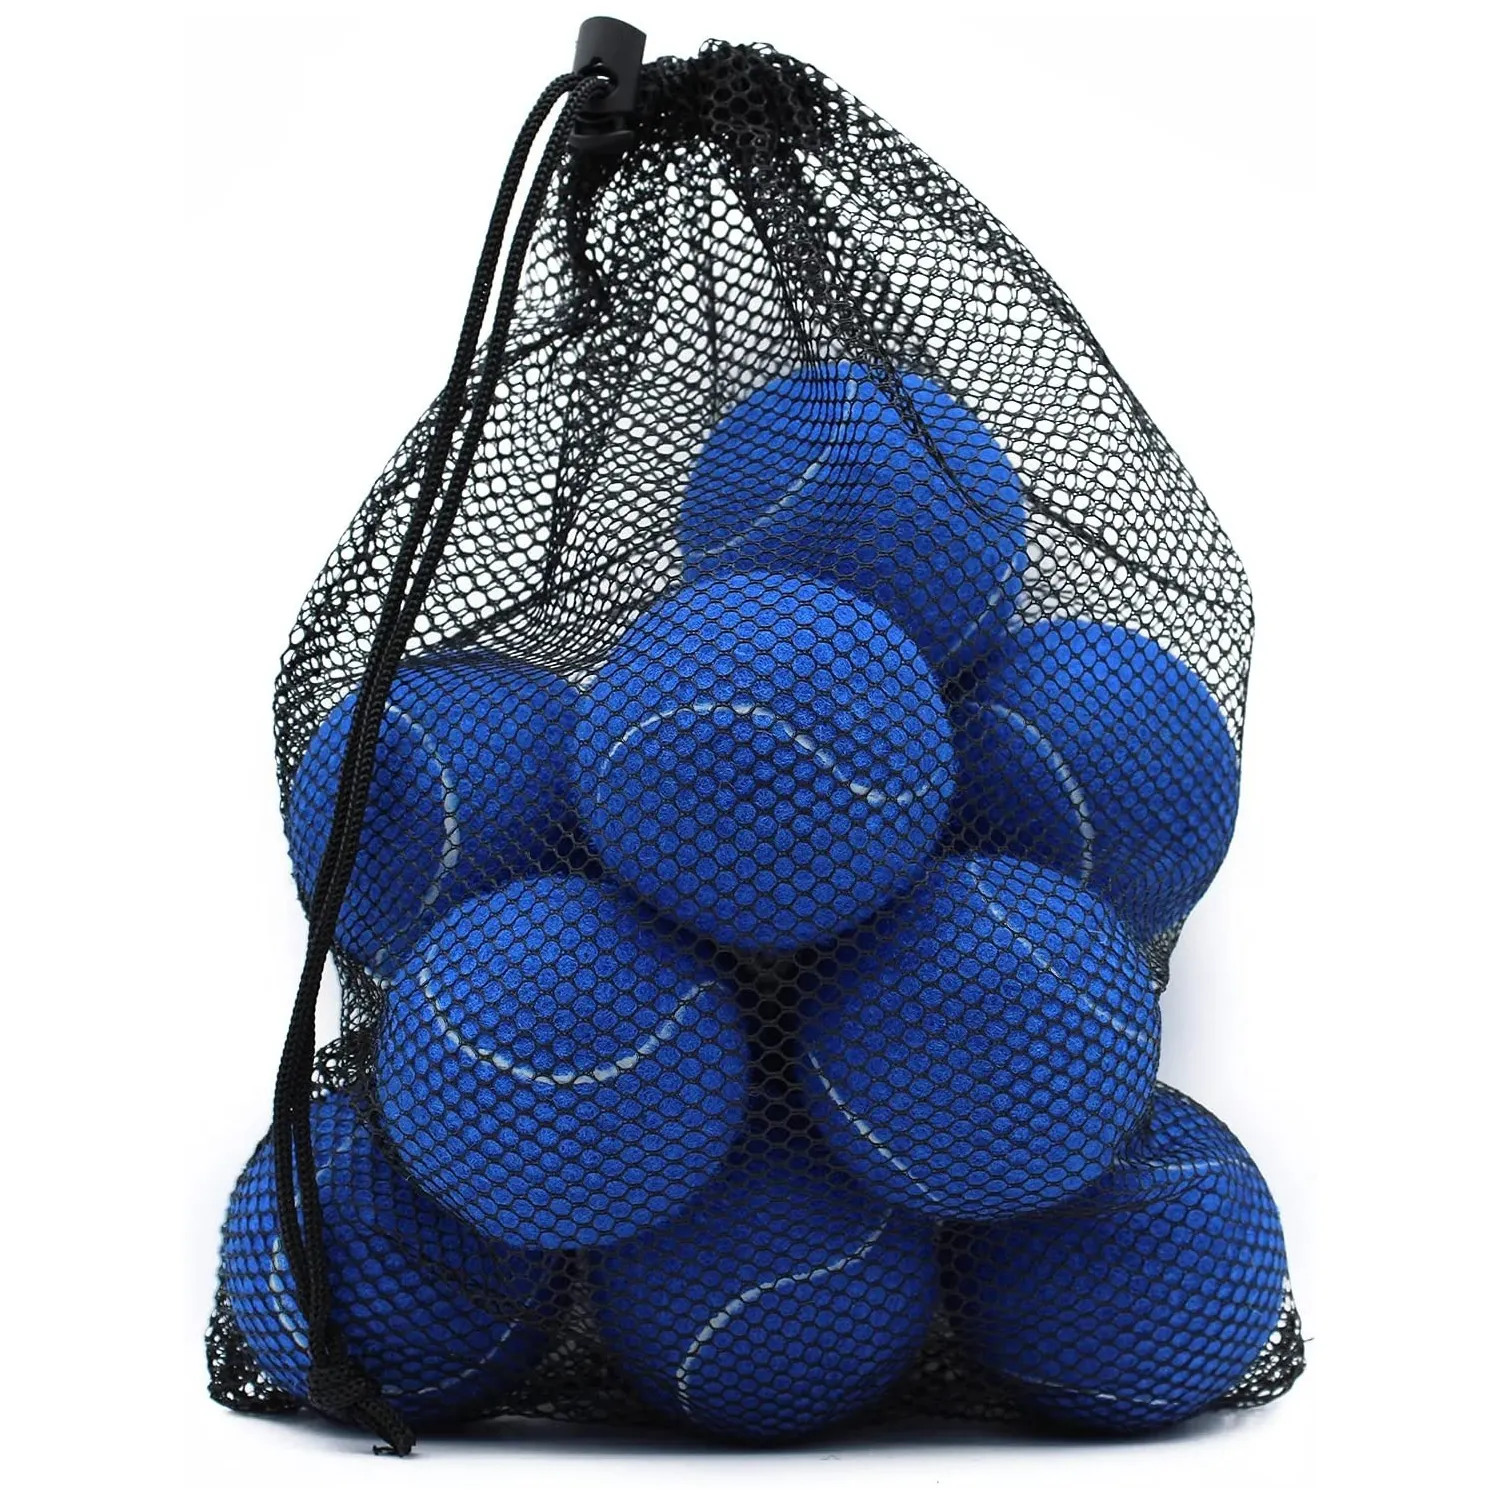 Yeni varış özel renkler ve Logo profesyonel açık spor plaj oyunları kriket eğitim tenis topları